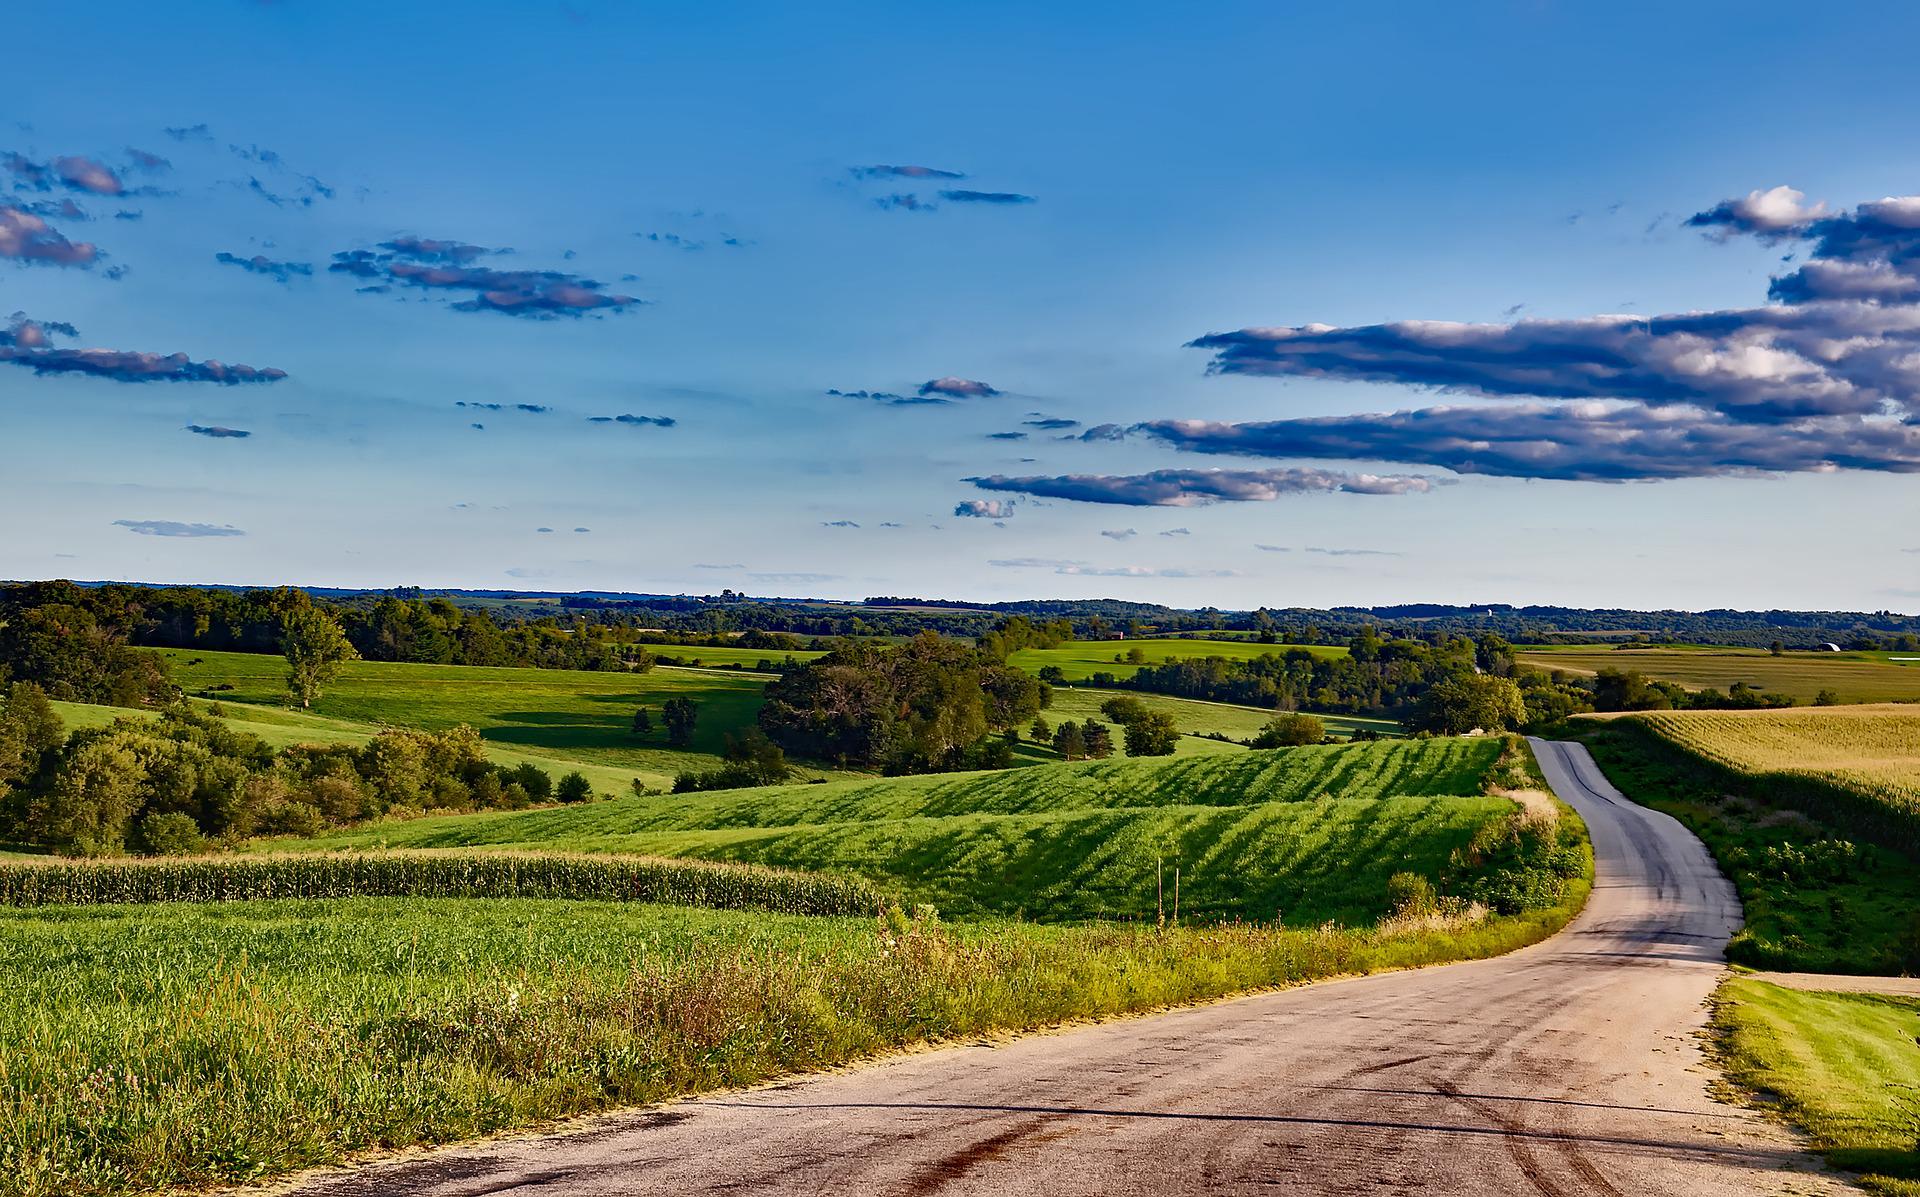 Rural landscape in Wisconsin.